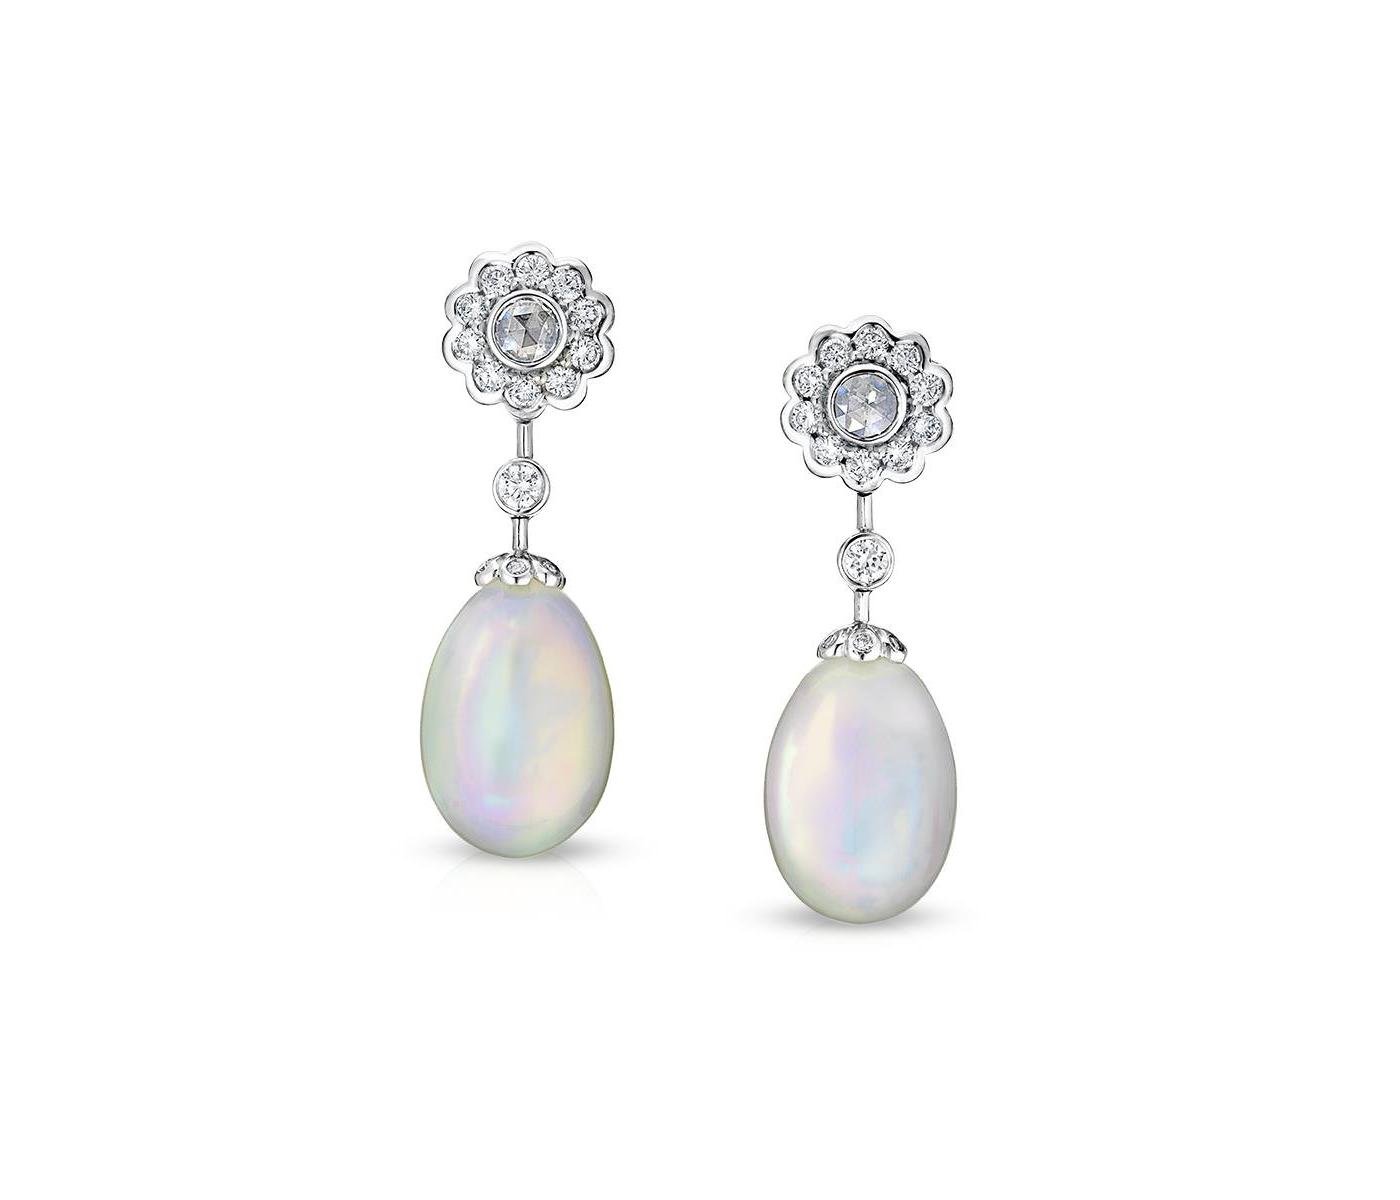 Earrings by Fabergé